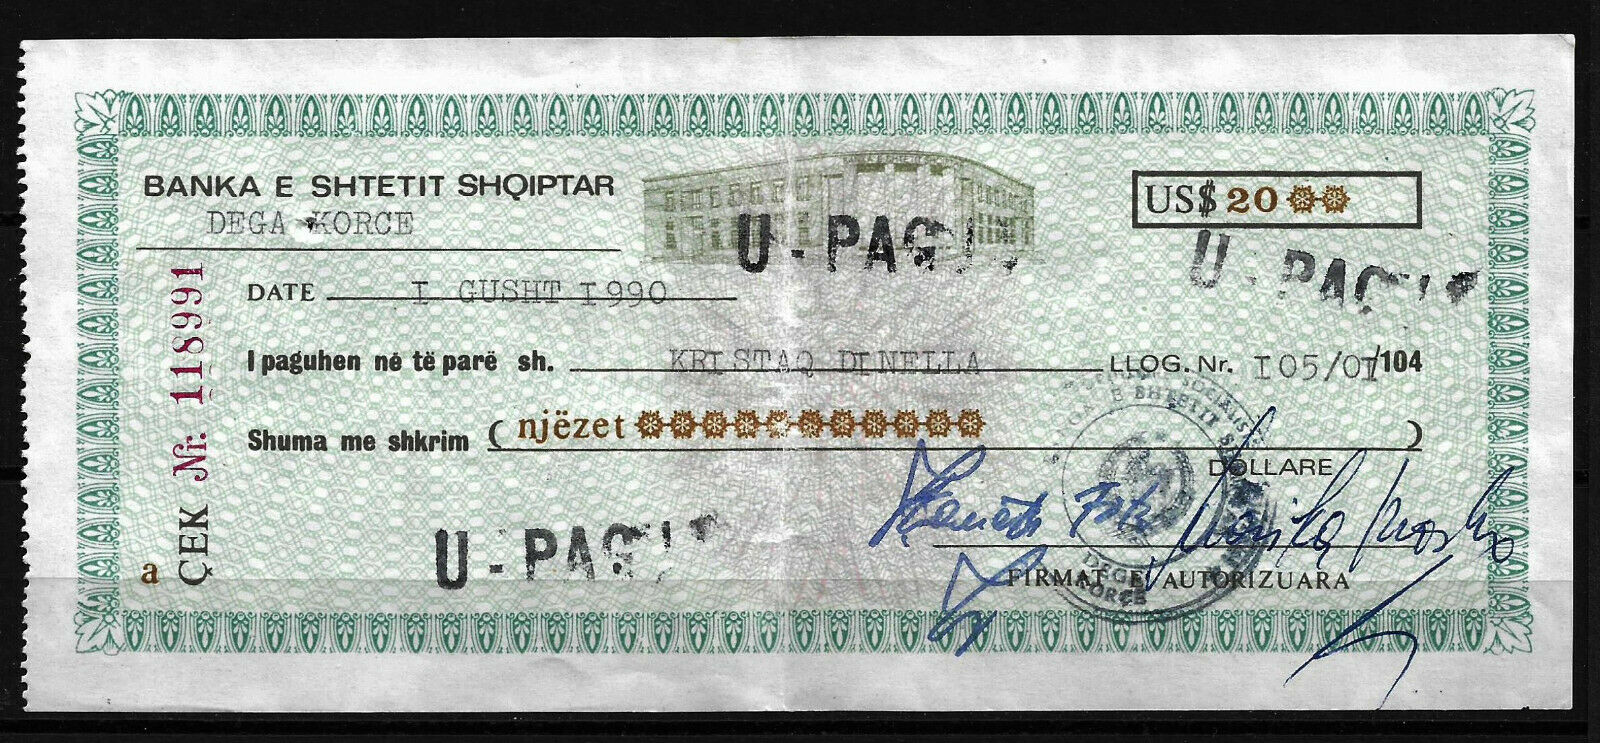 Check Used 1990 $20, Bank Of Albania - Very Rare